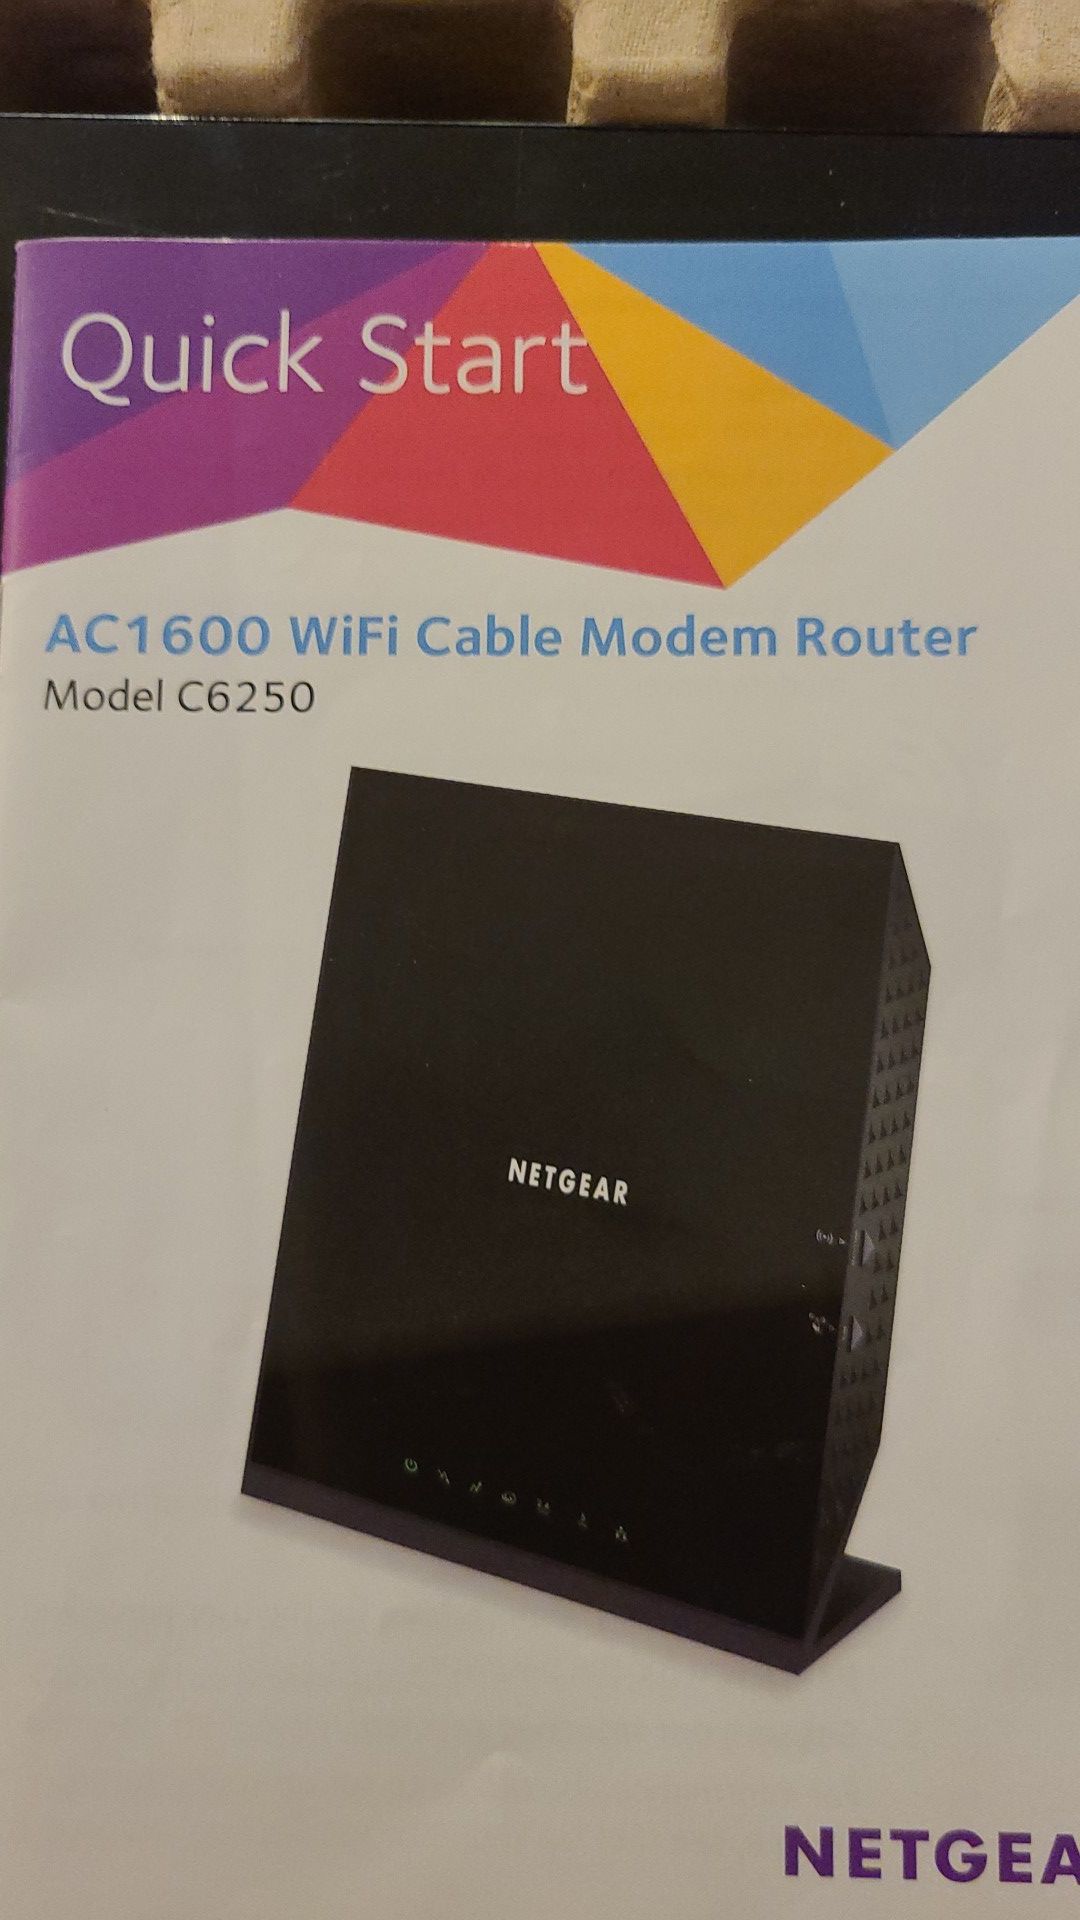 Netgear cable modem router